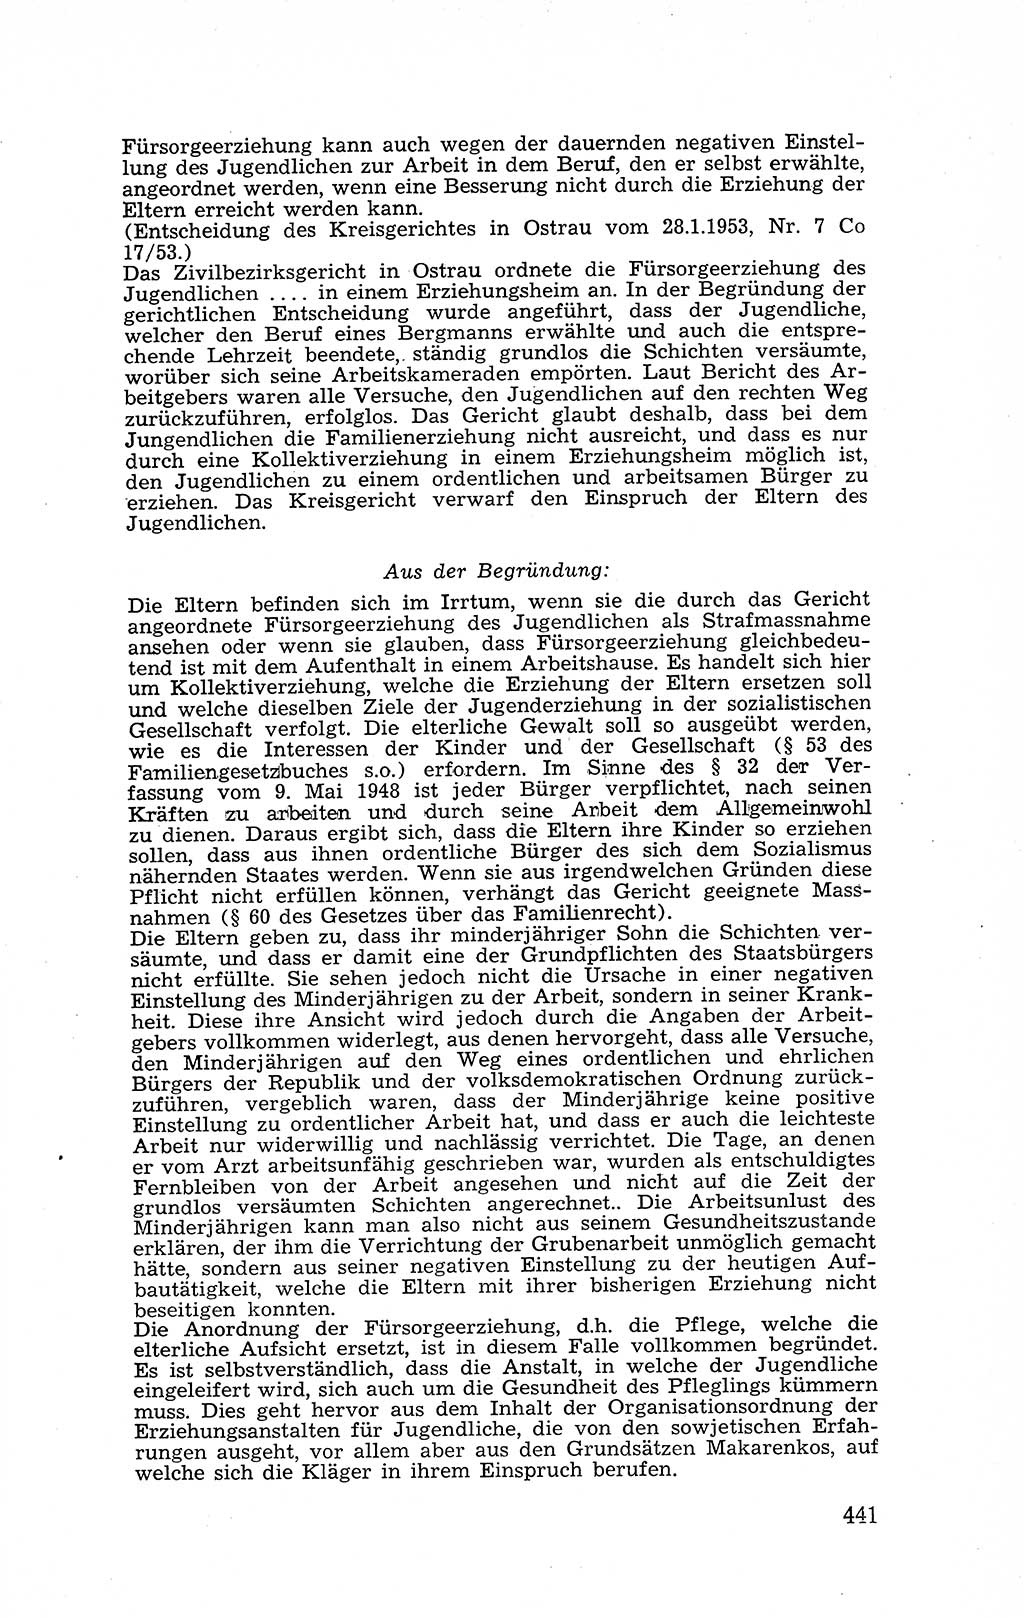 Recht in Fesseln, Dokumente, Internationale Juristen-Kommission [Bundesrepublik Deutschland (BRD)] 1955, Seite 441 (R. Dok. IJK BRD 1955, S. 441)